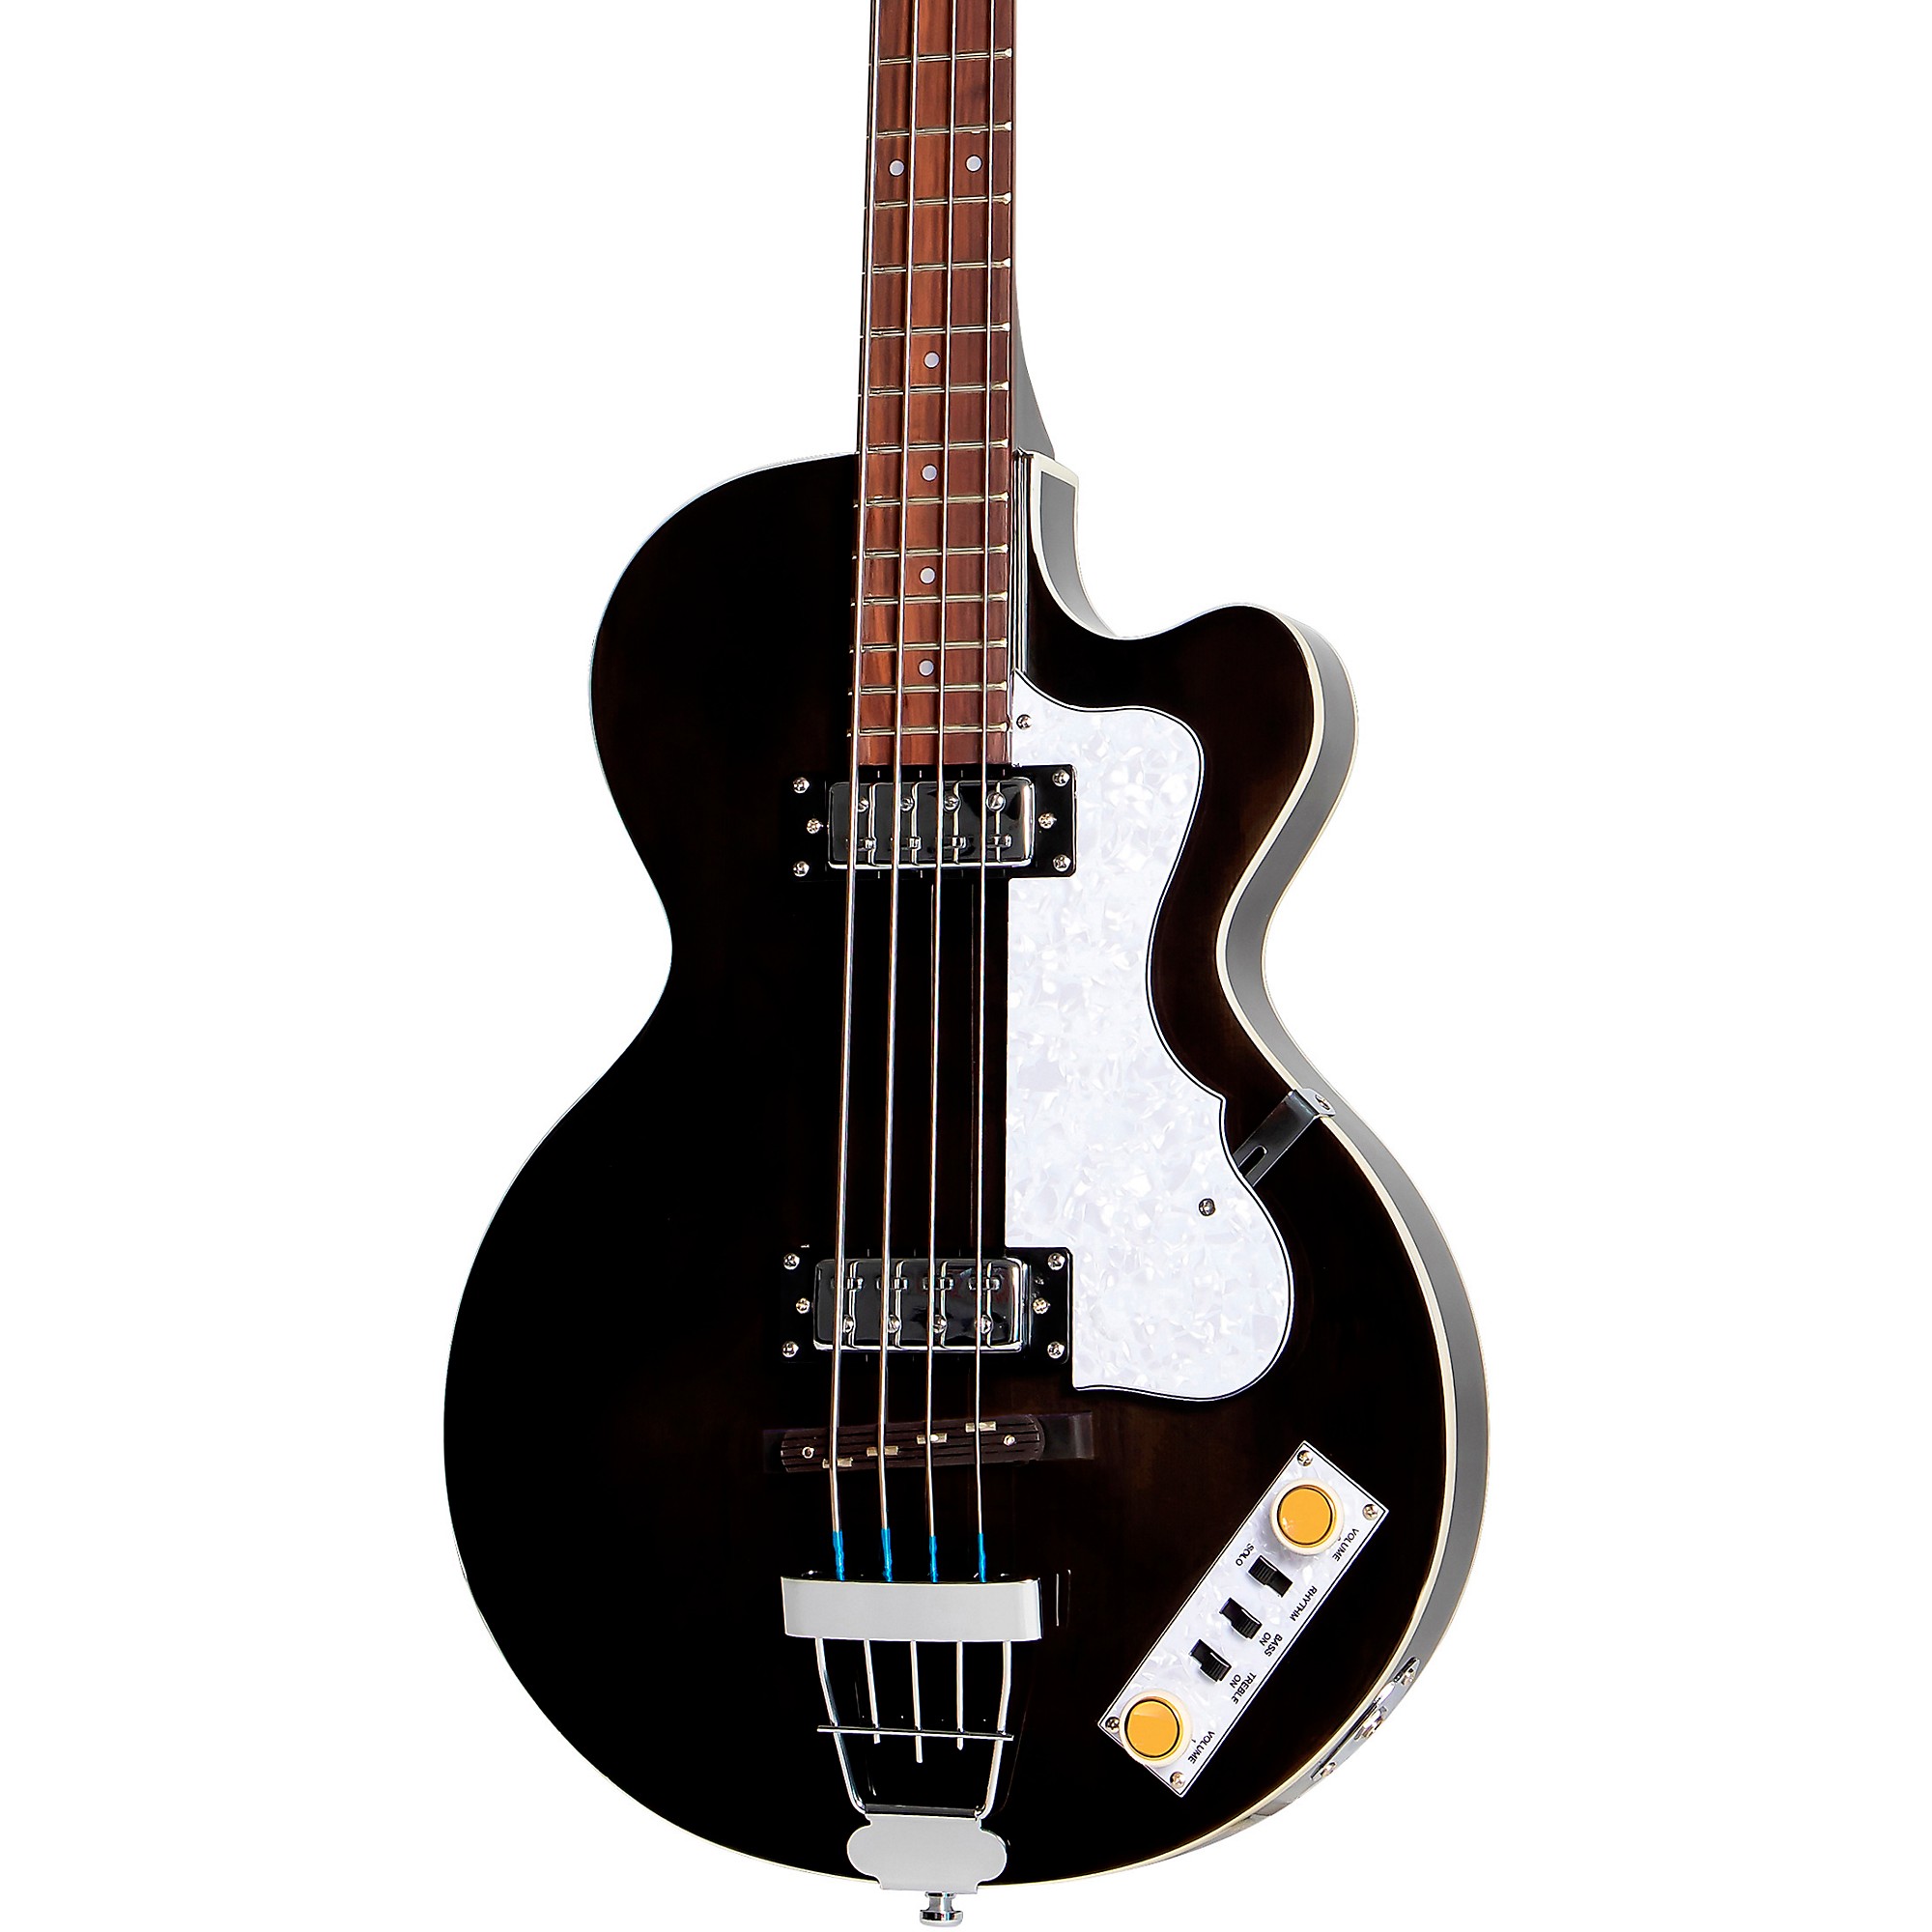 Клубный бас-гитара Hofner Ignition Series с короткими мензурами, черный цвет